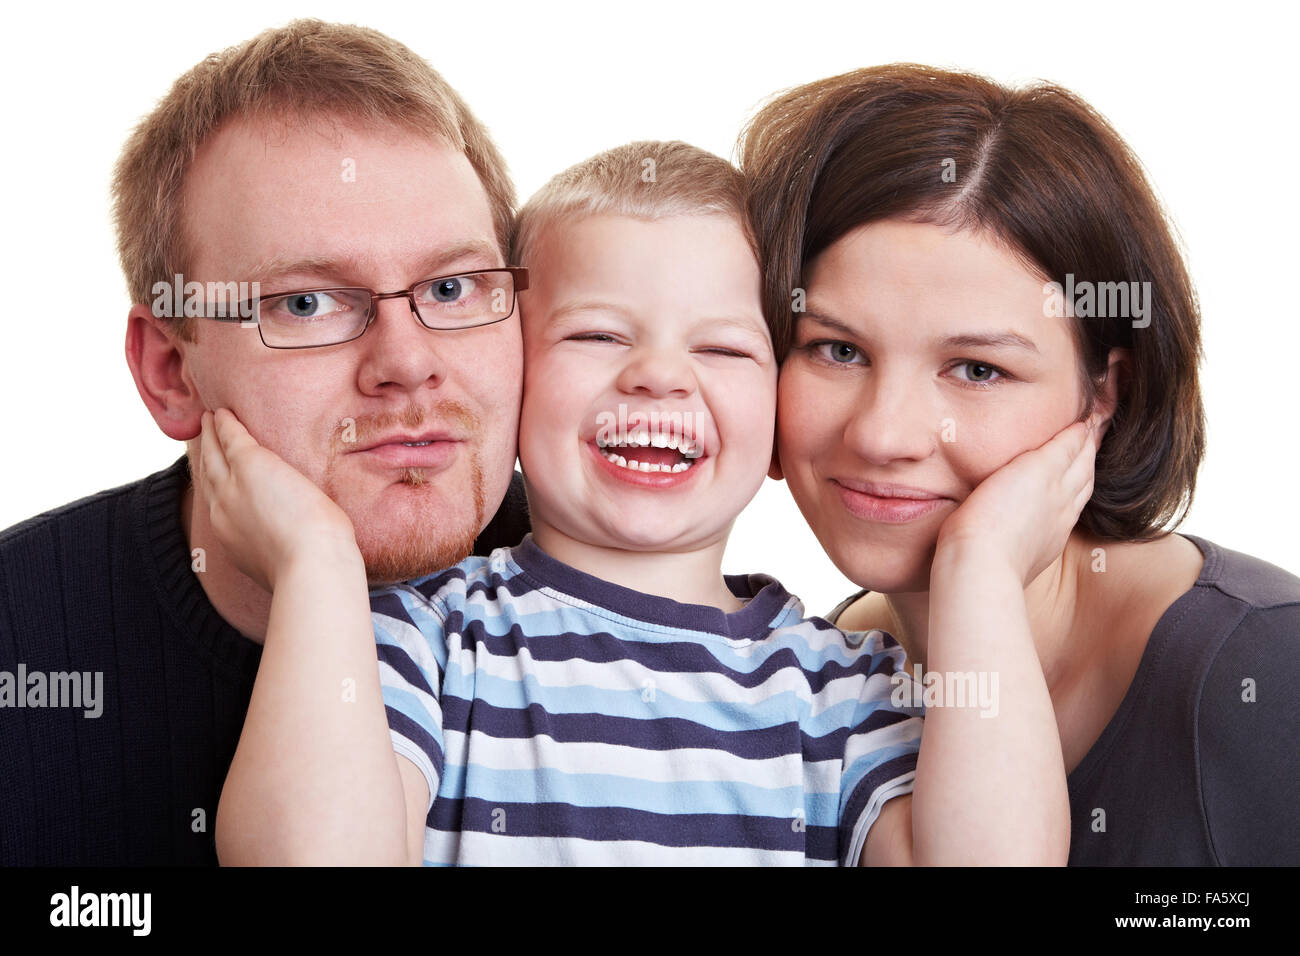 Glücklich kleiner Junge seine Eltern Wangen gegen seinen eigenen drücken Stockfoto